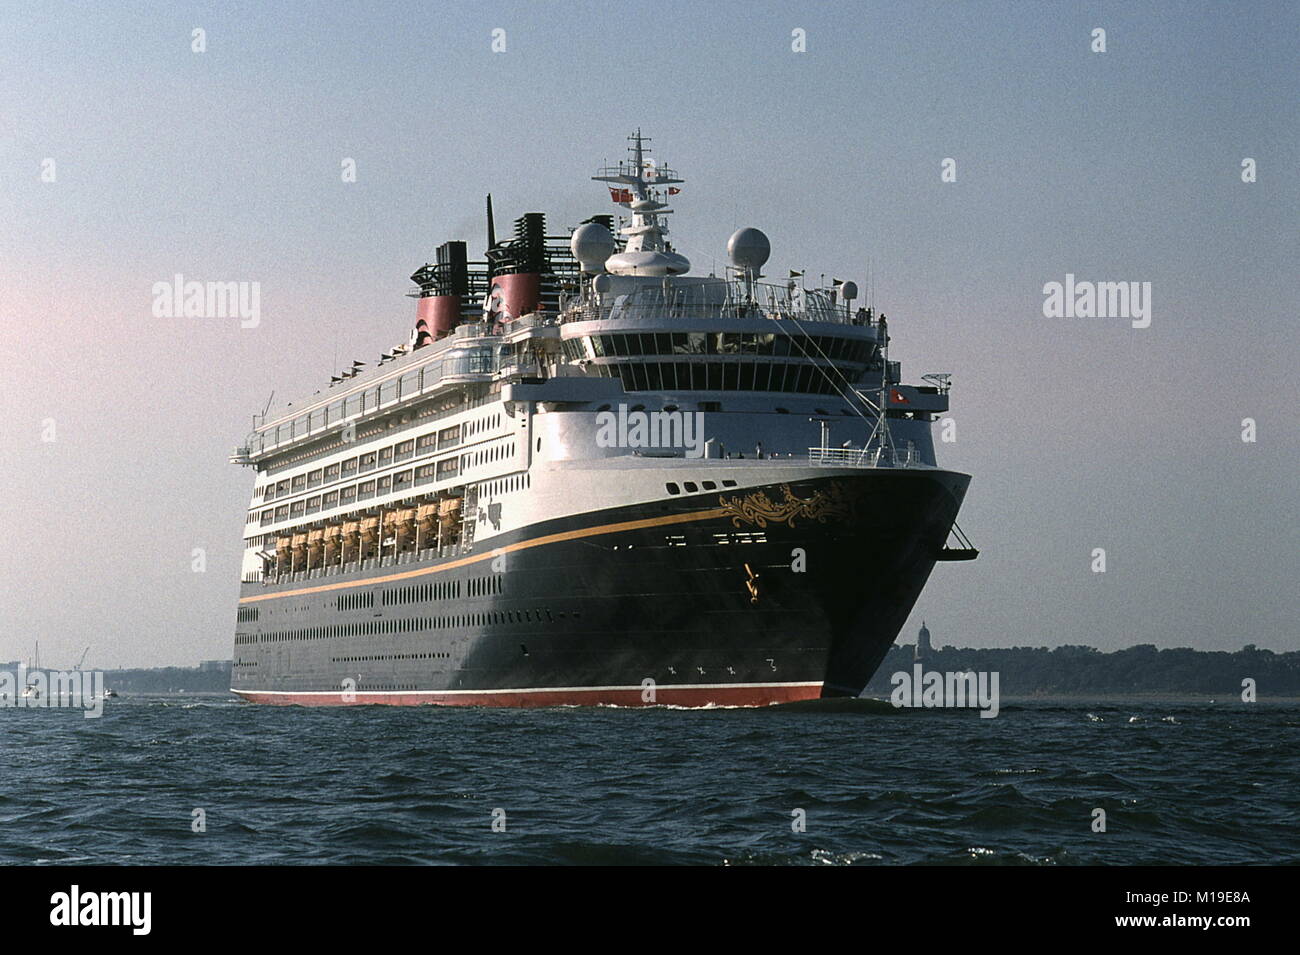 AJAXNETPHOTO. Juillet 23, 1999. SOUTHAMPTON, Angleterre. - Étonnant navire - le nouveau bateau de croisière Disney Wonder Outward Bound DE SOUTHAMPTON. PHOTO:JONATHAN EASTLAND/AJAX. REF:990104 8 Banque D'Images